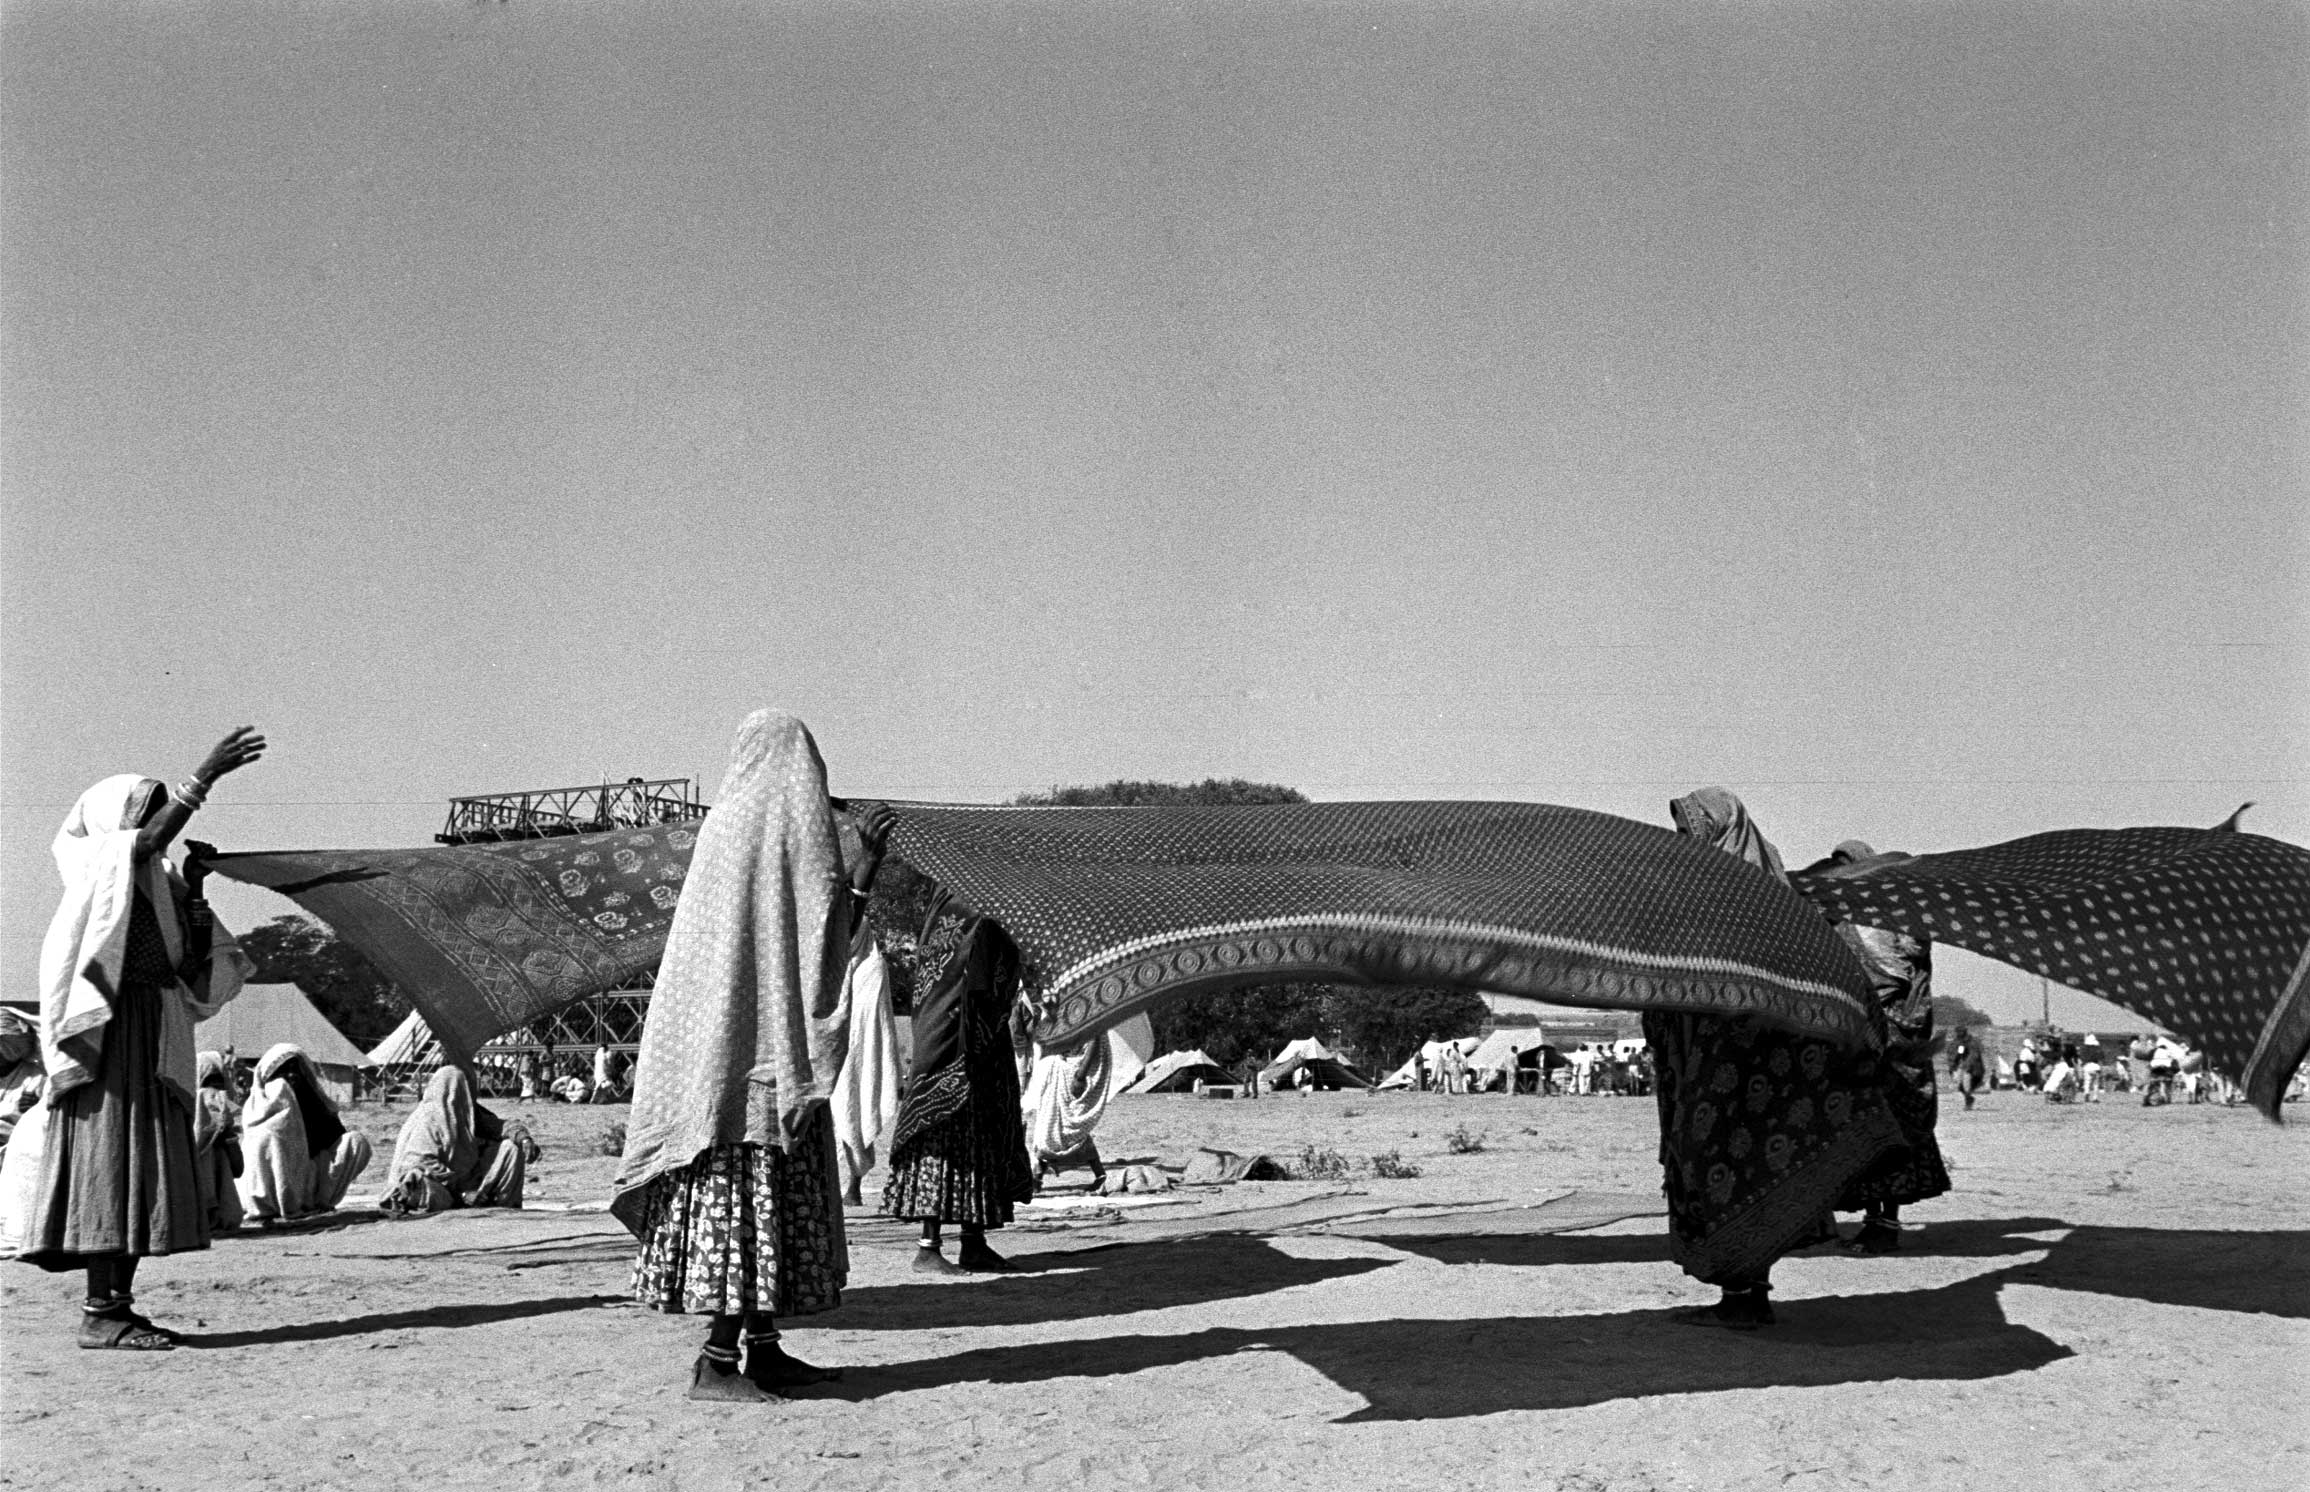 Gathering of the Faithful: Life at India's Colossal Kumbh Mela, 1953